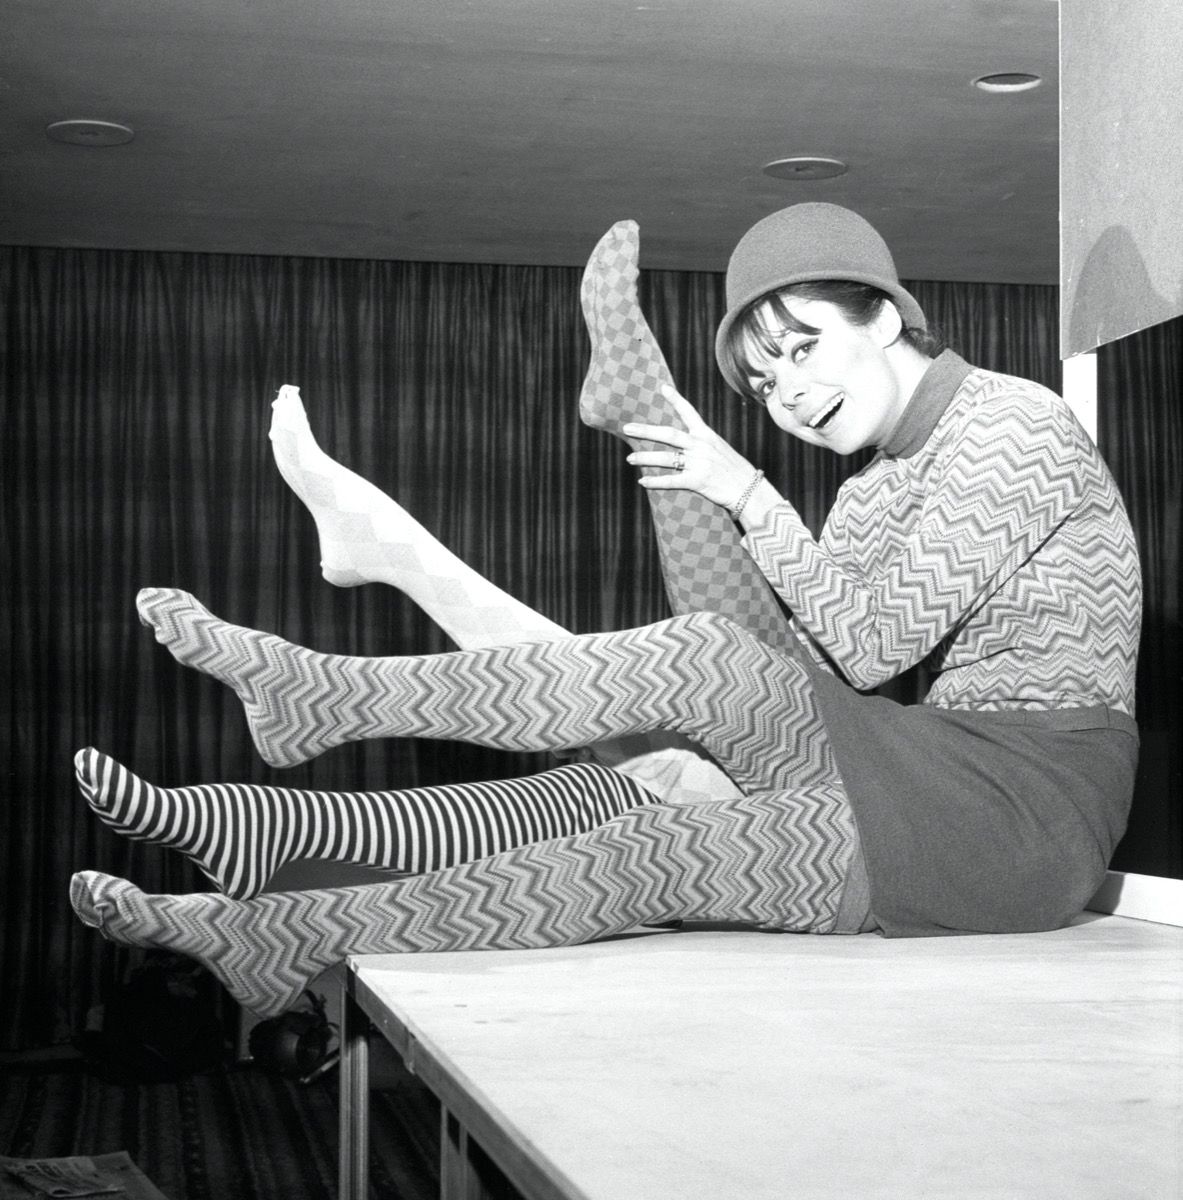 foto in bianco e nero di una donna negli anni 